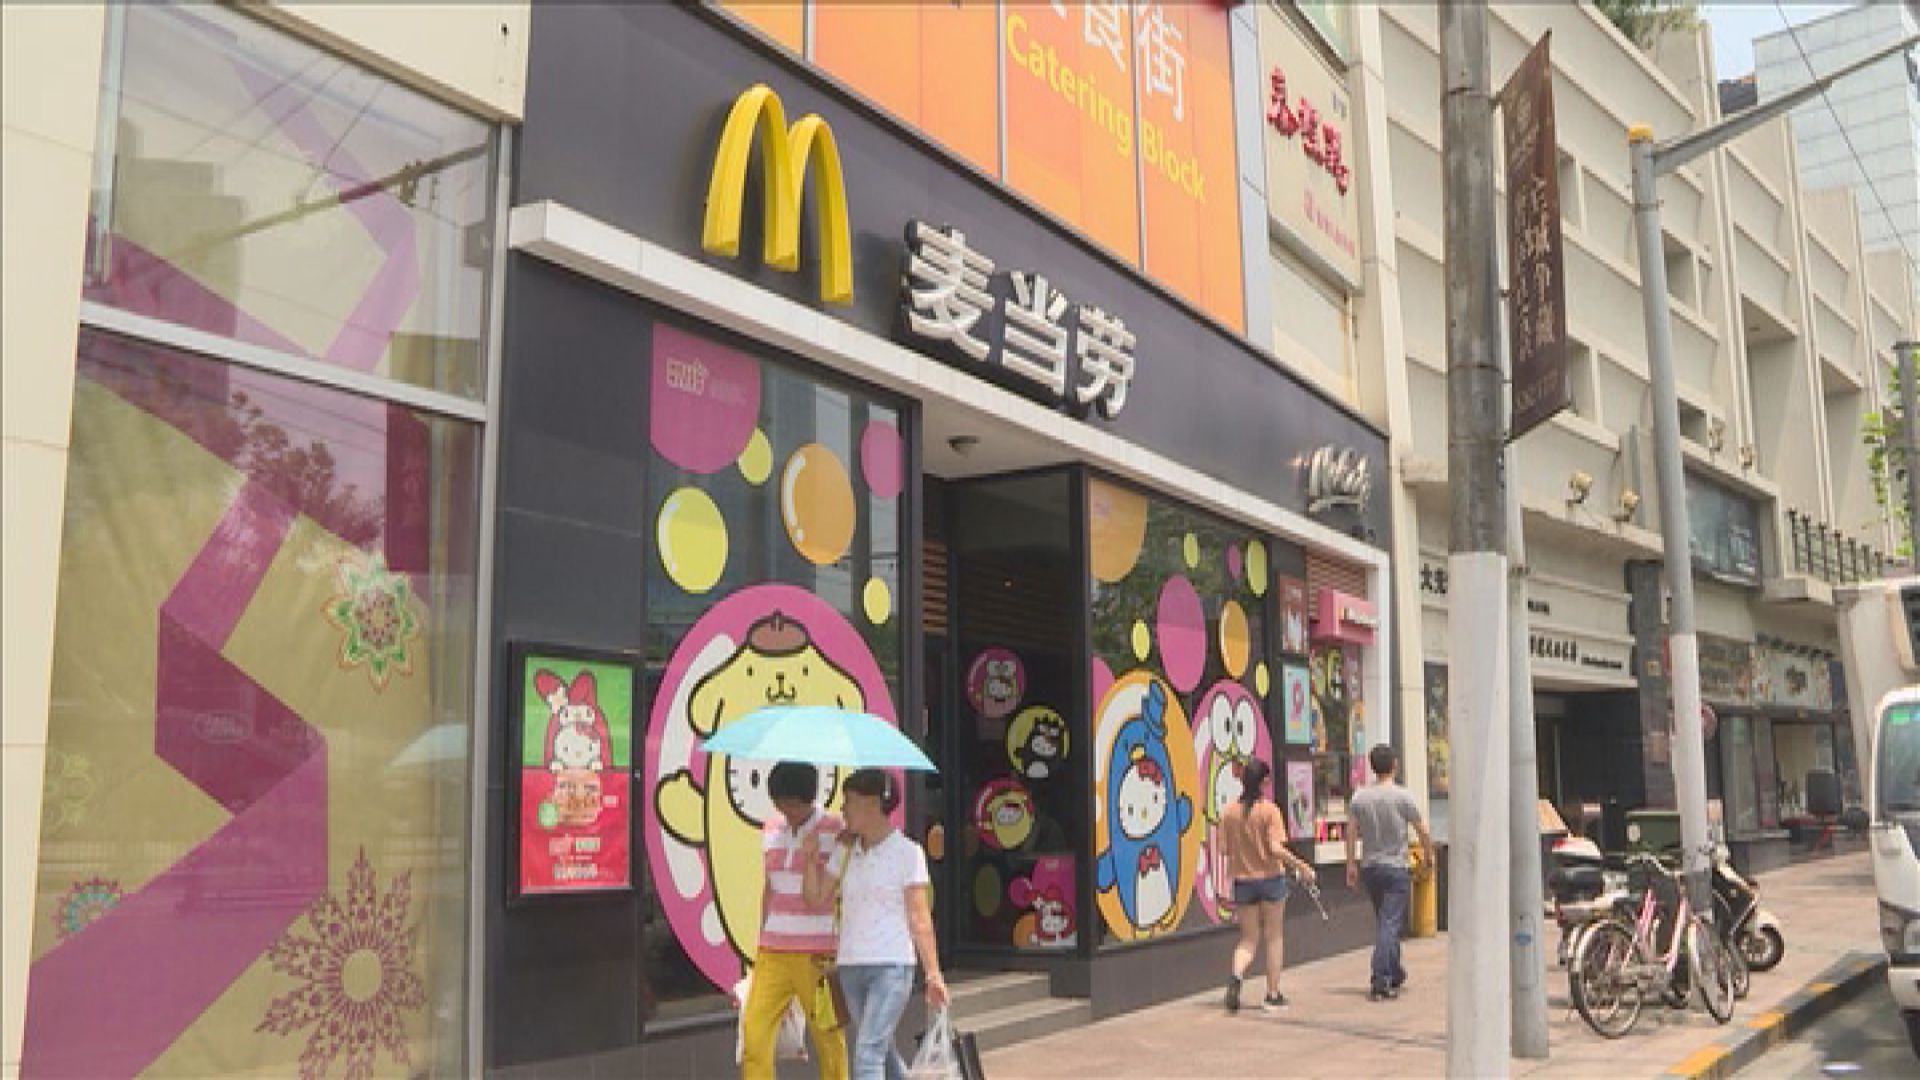 【數字人仔】FT:中國要求麥當勞等美企冬奧前擴採用範圍